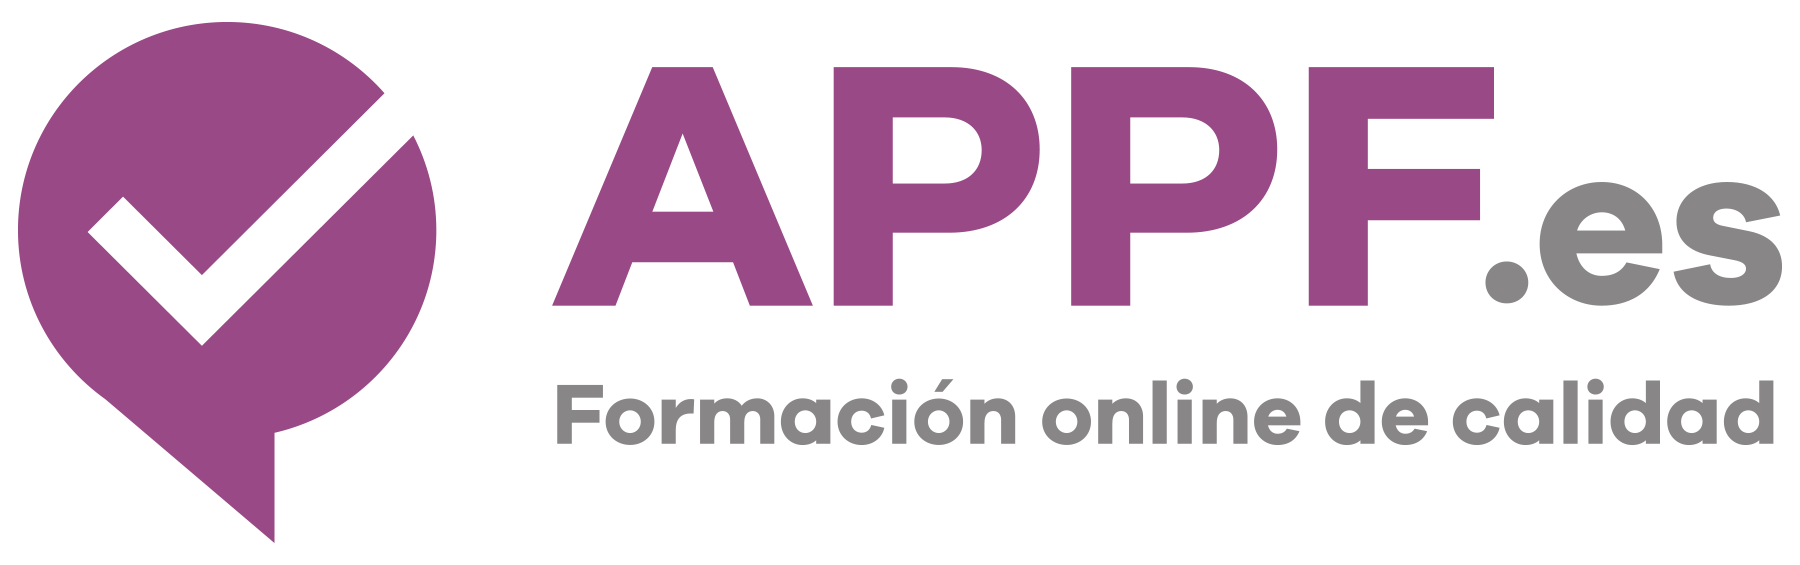 logo-APPF-2016